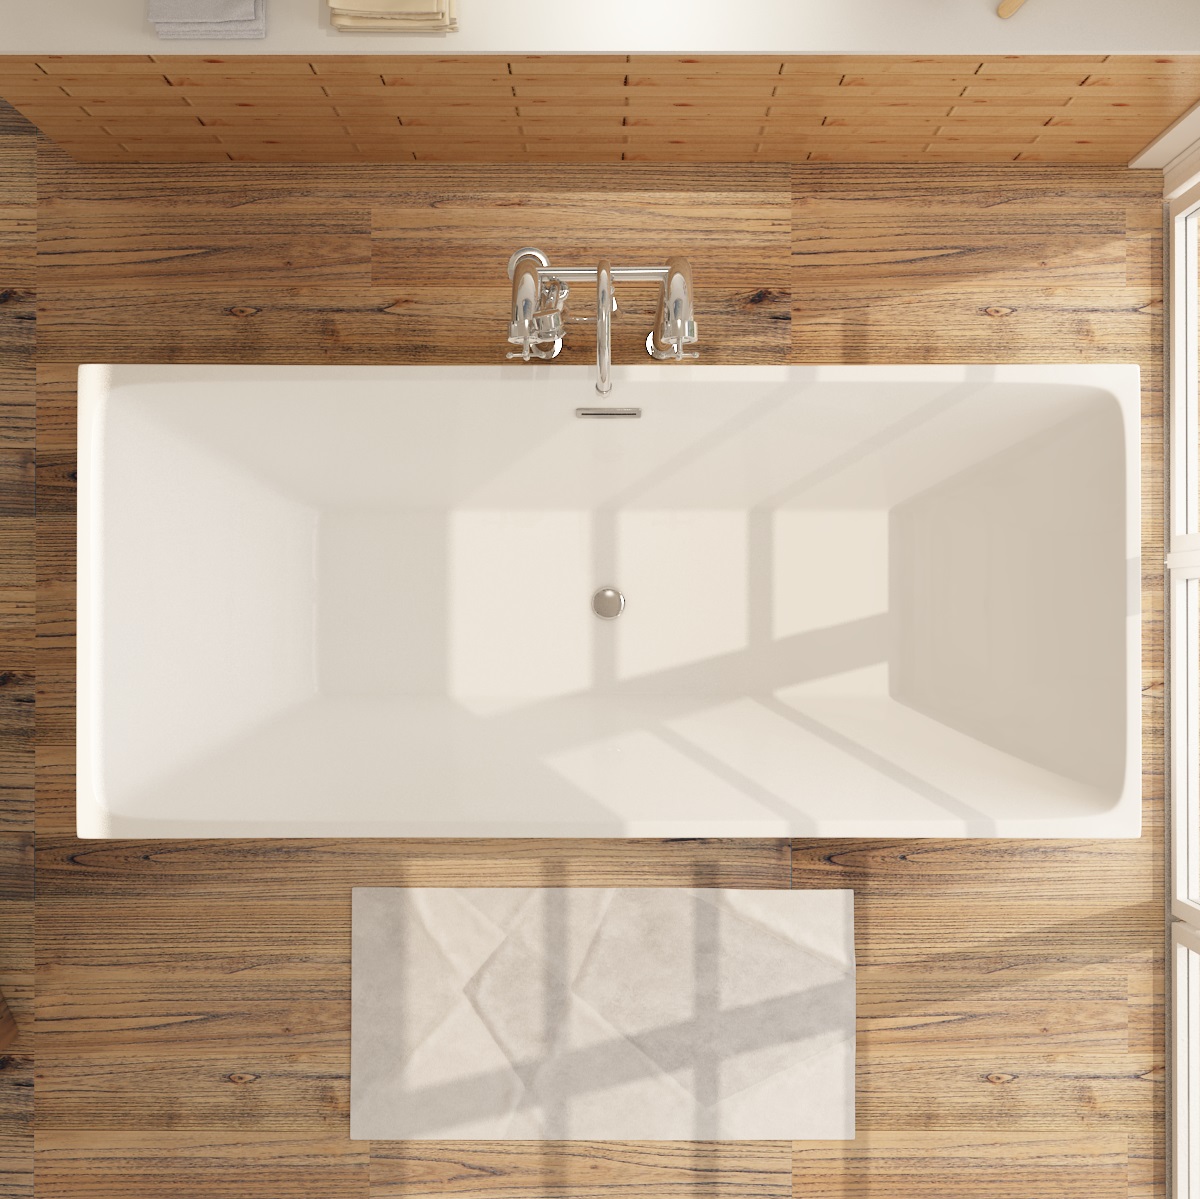 Freistehende Badewanne ALTENA Design aus Acryl in Weiß - 3 Größen